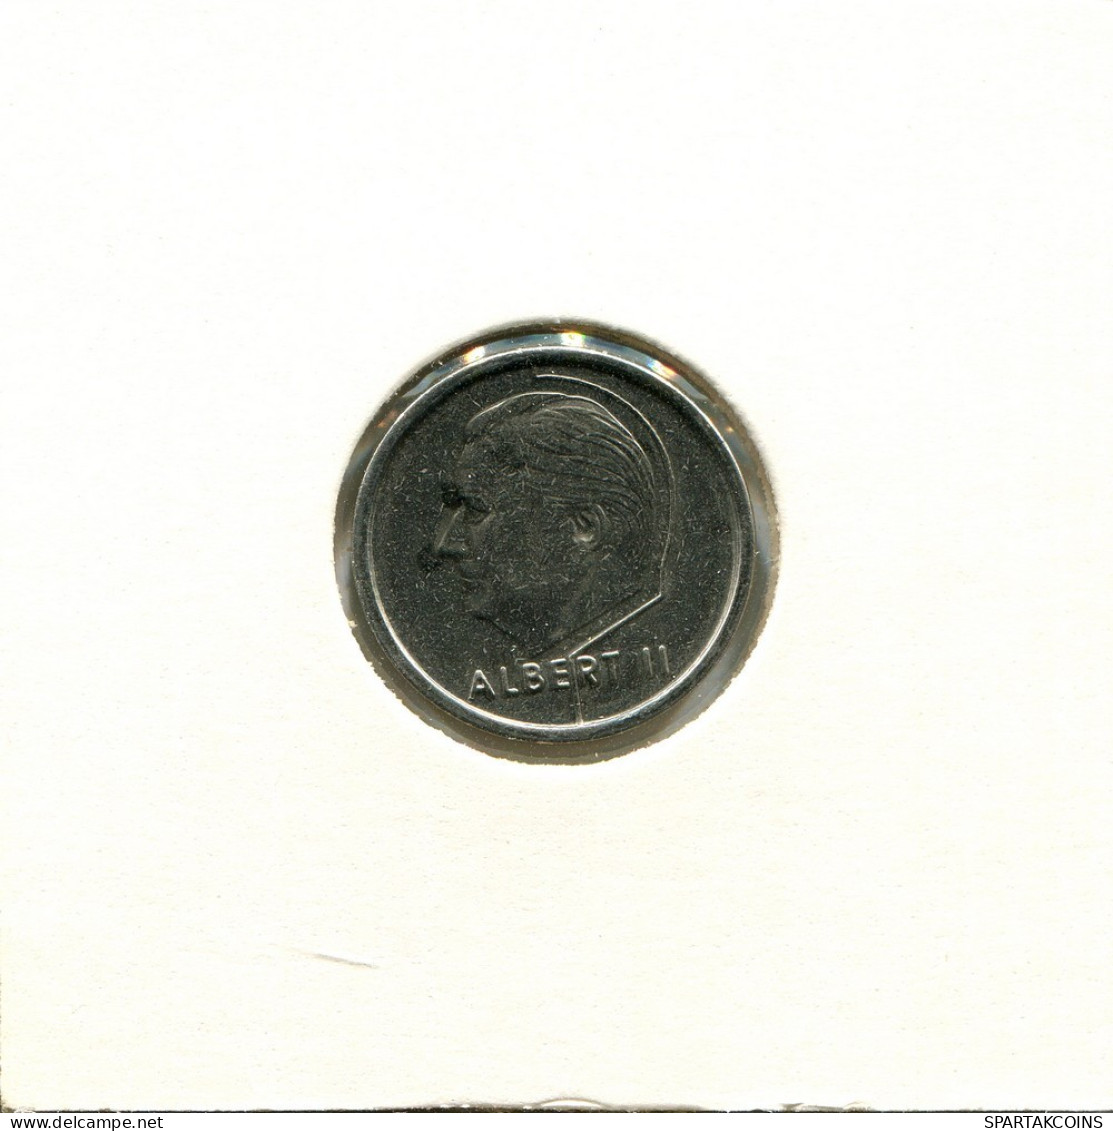 1 FRANC 1994 FRENCH Text BÉLGICA BELGIUM Moneda #AU110.E.A - 1 Frank